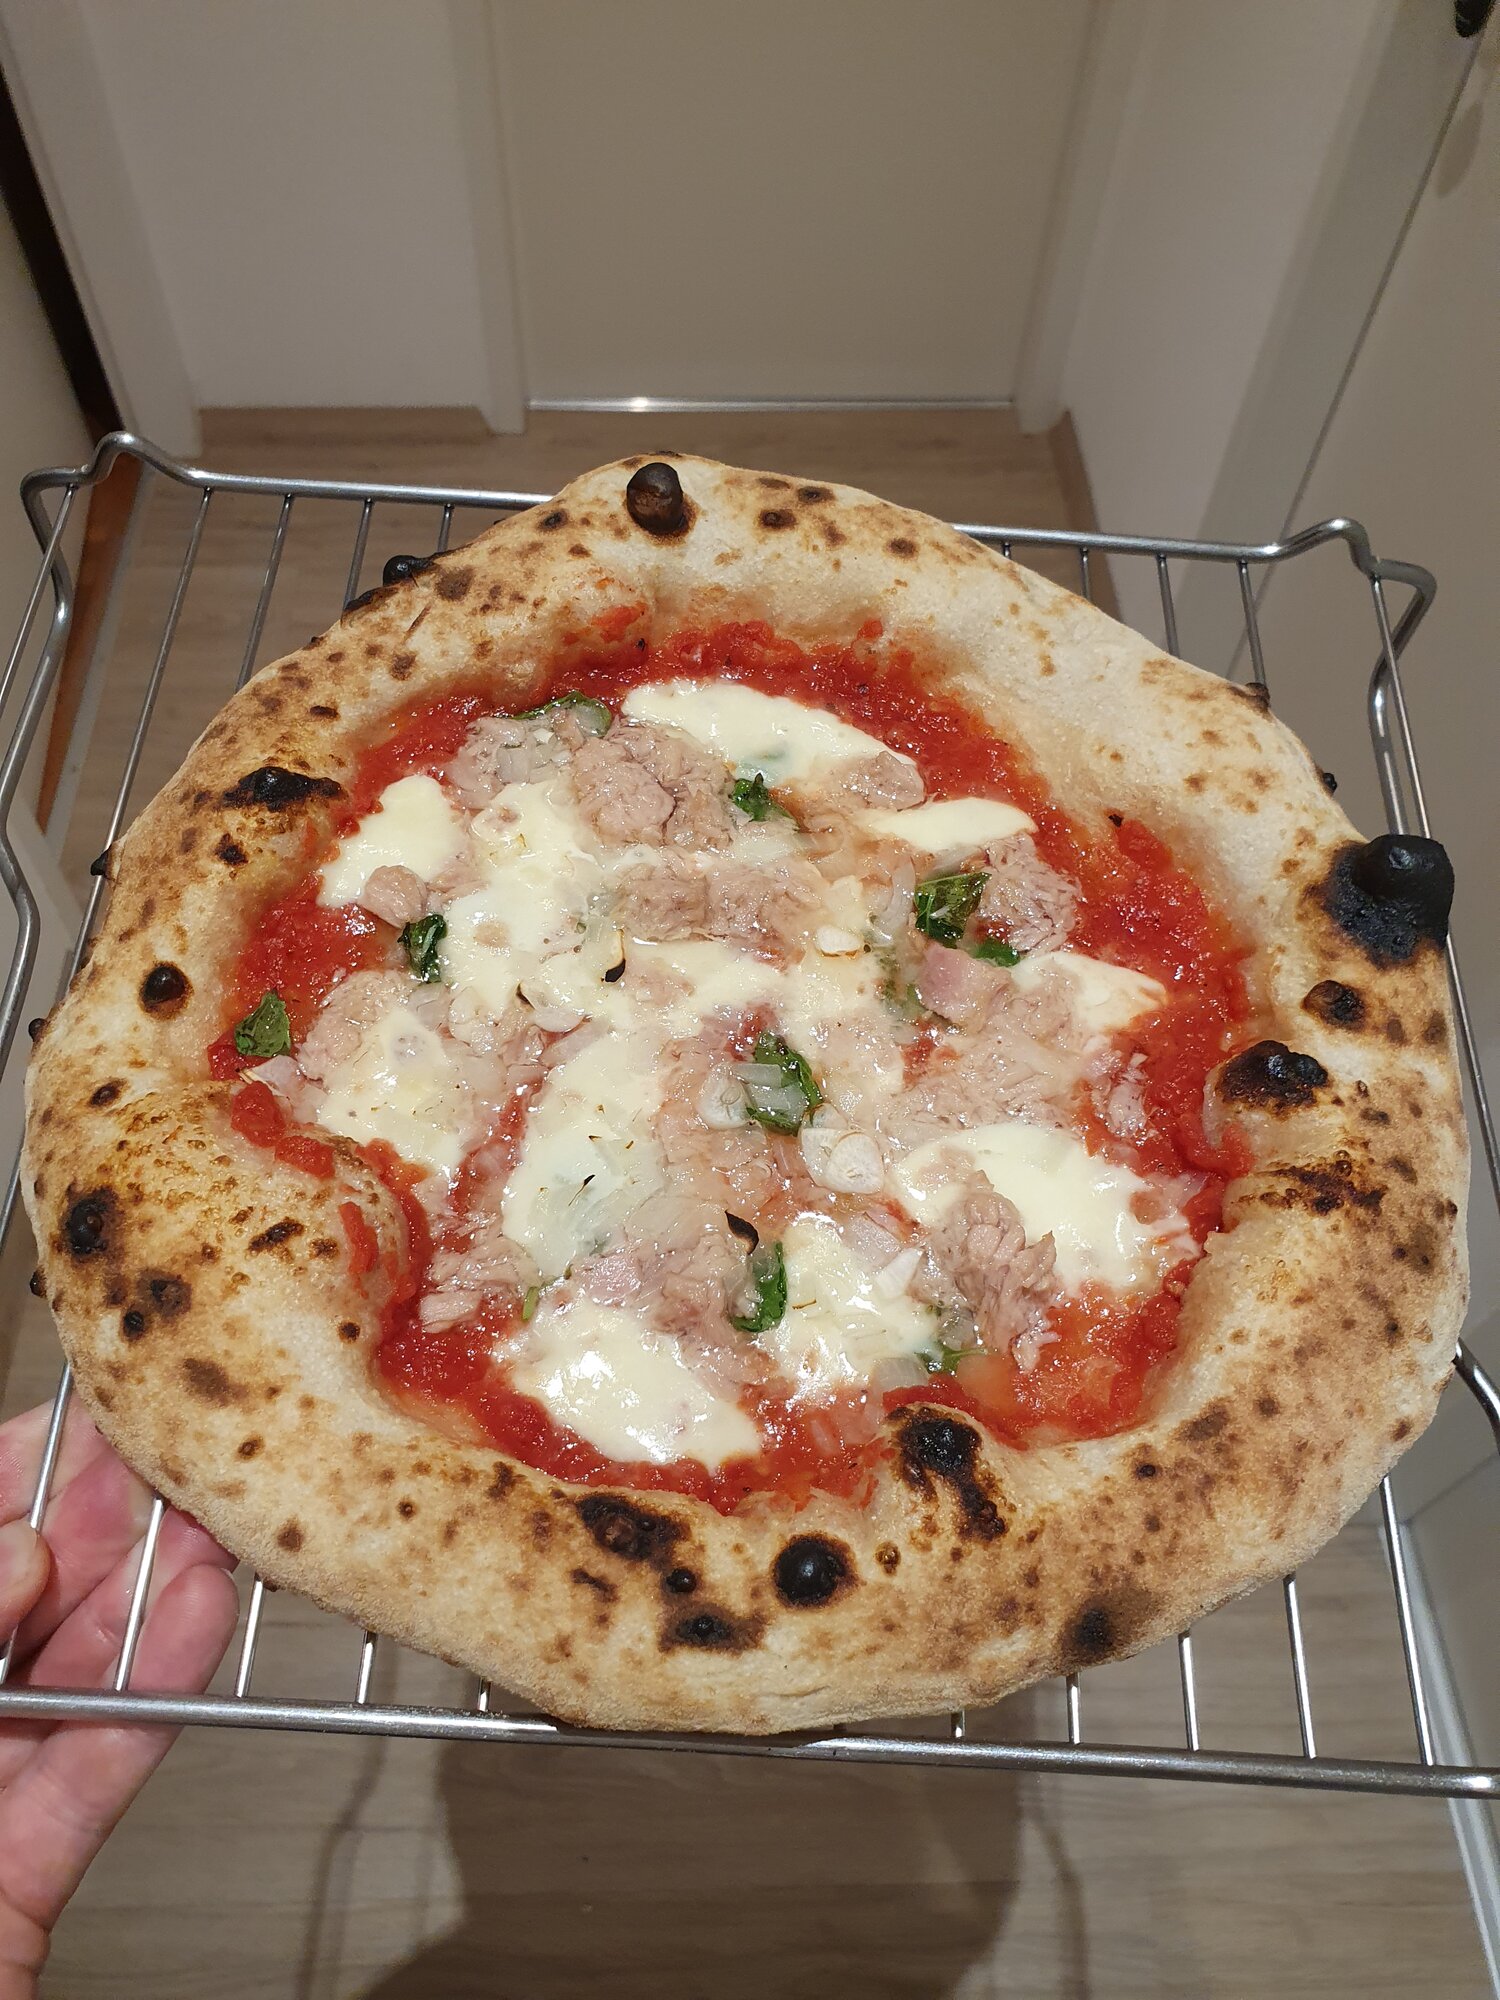 Pizza Napolitana im konventionellen Backofen? | Seite 6 | Grillforum